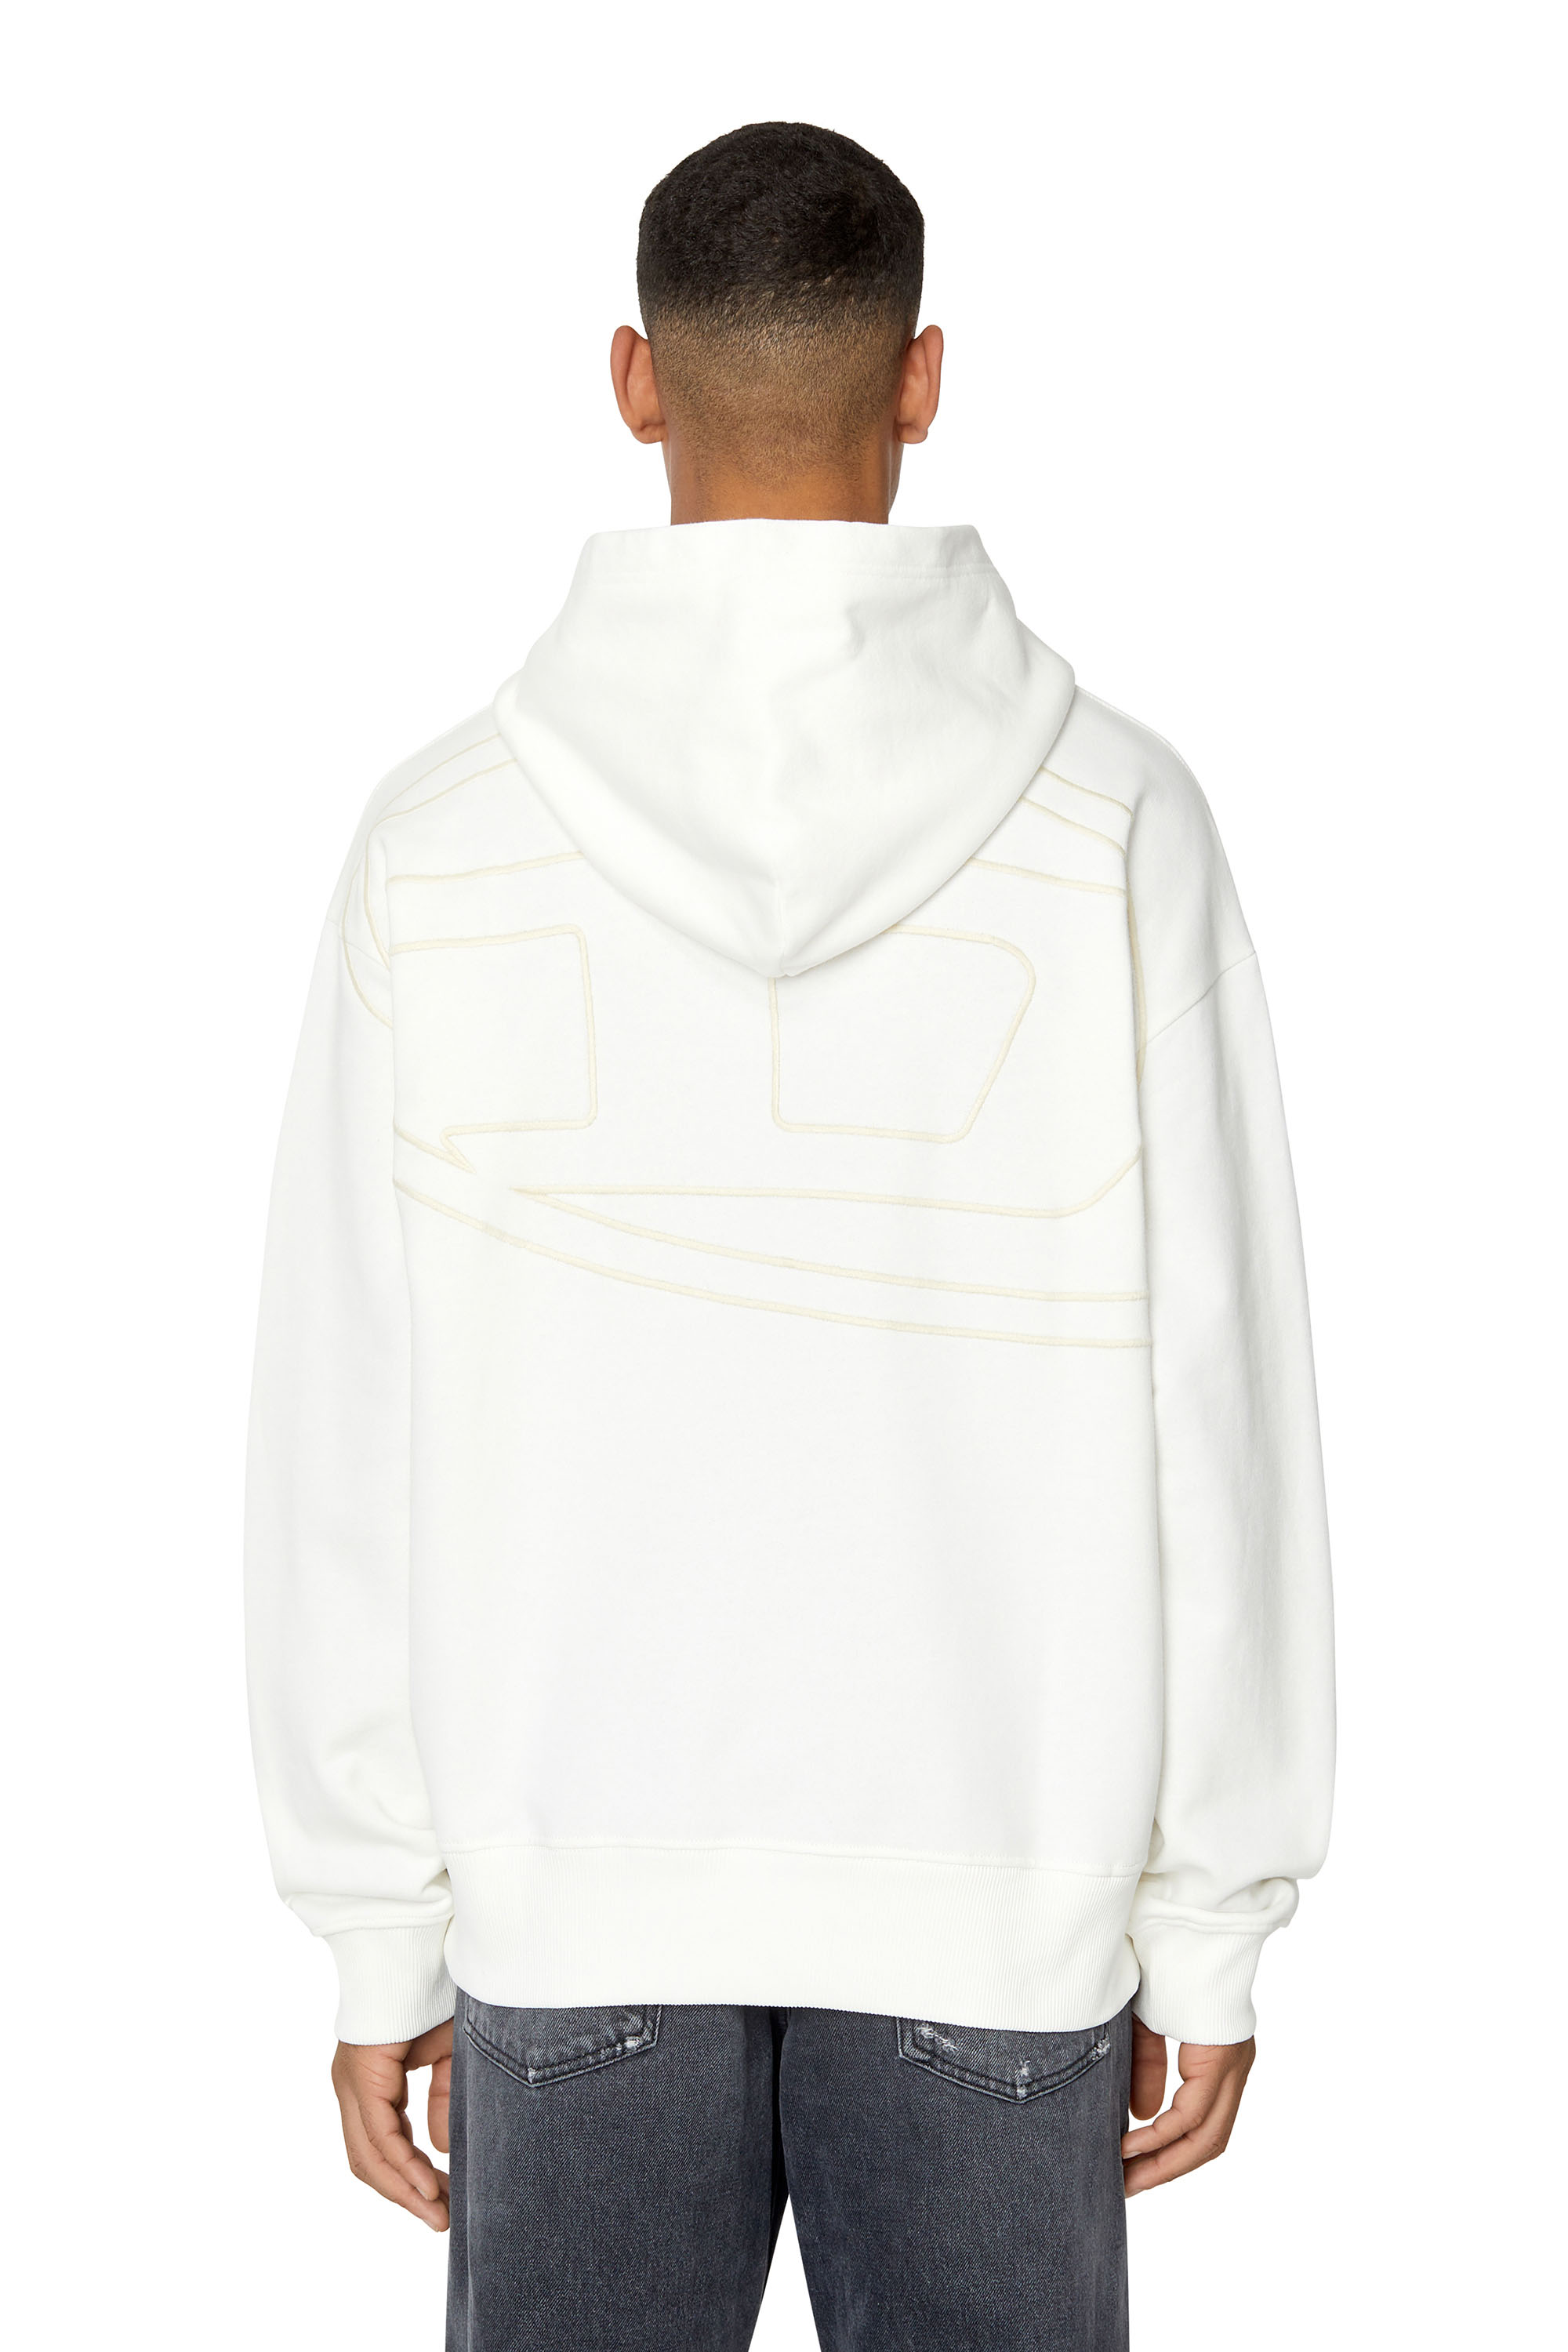 Diesel - Sweat-shirt à capuche avec maxi logo D dans le dos - Pull Cotton - Homme - Blanc